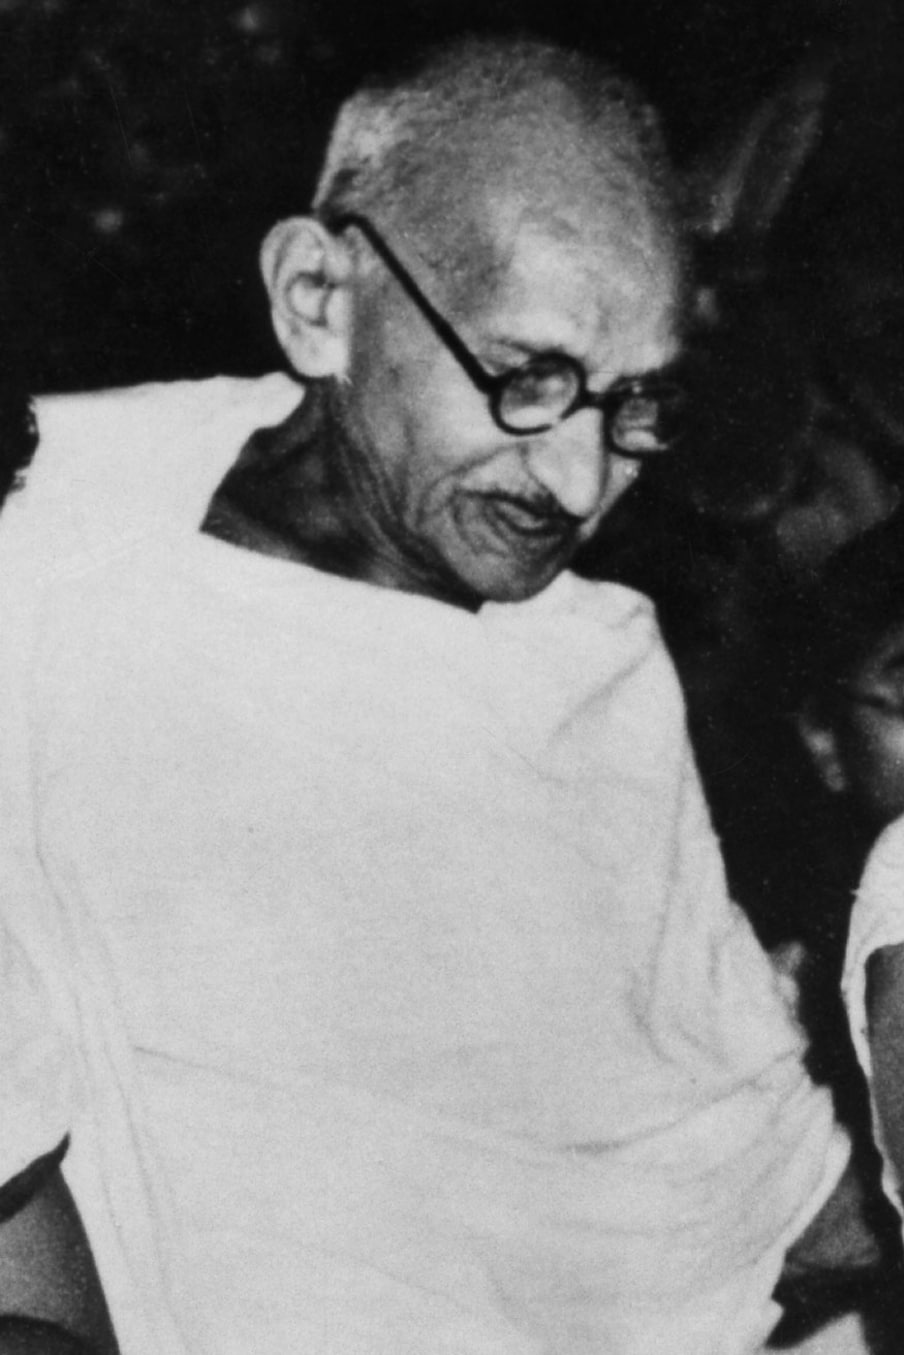  95. తన ఇంట్లోని గార్డెన్‌లో మహాత్మాగాంధీ. (Image: Getty Images)